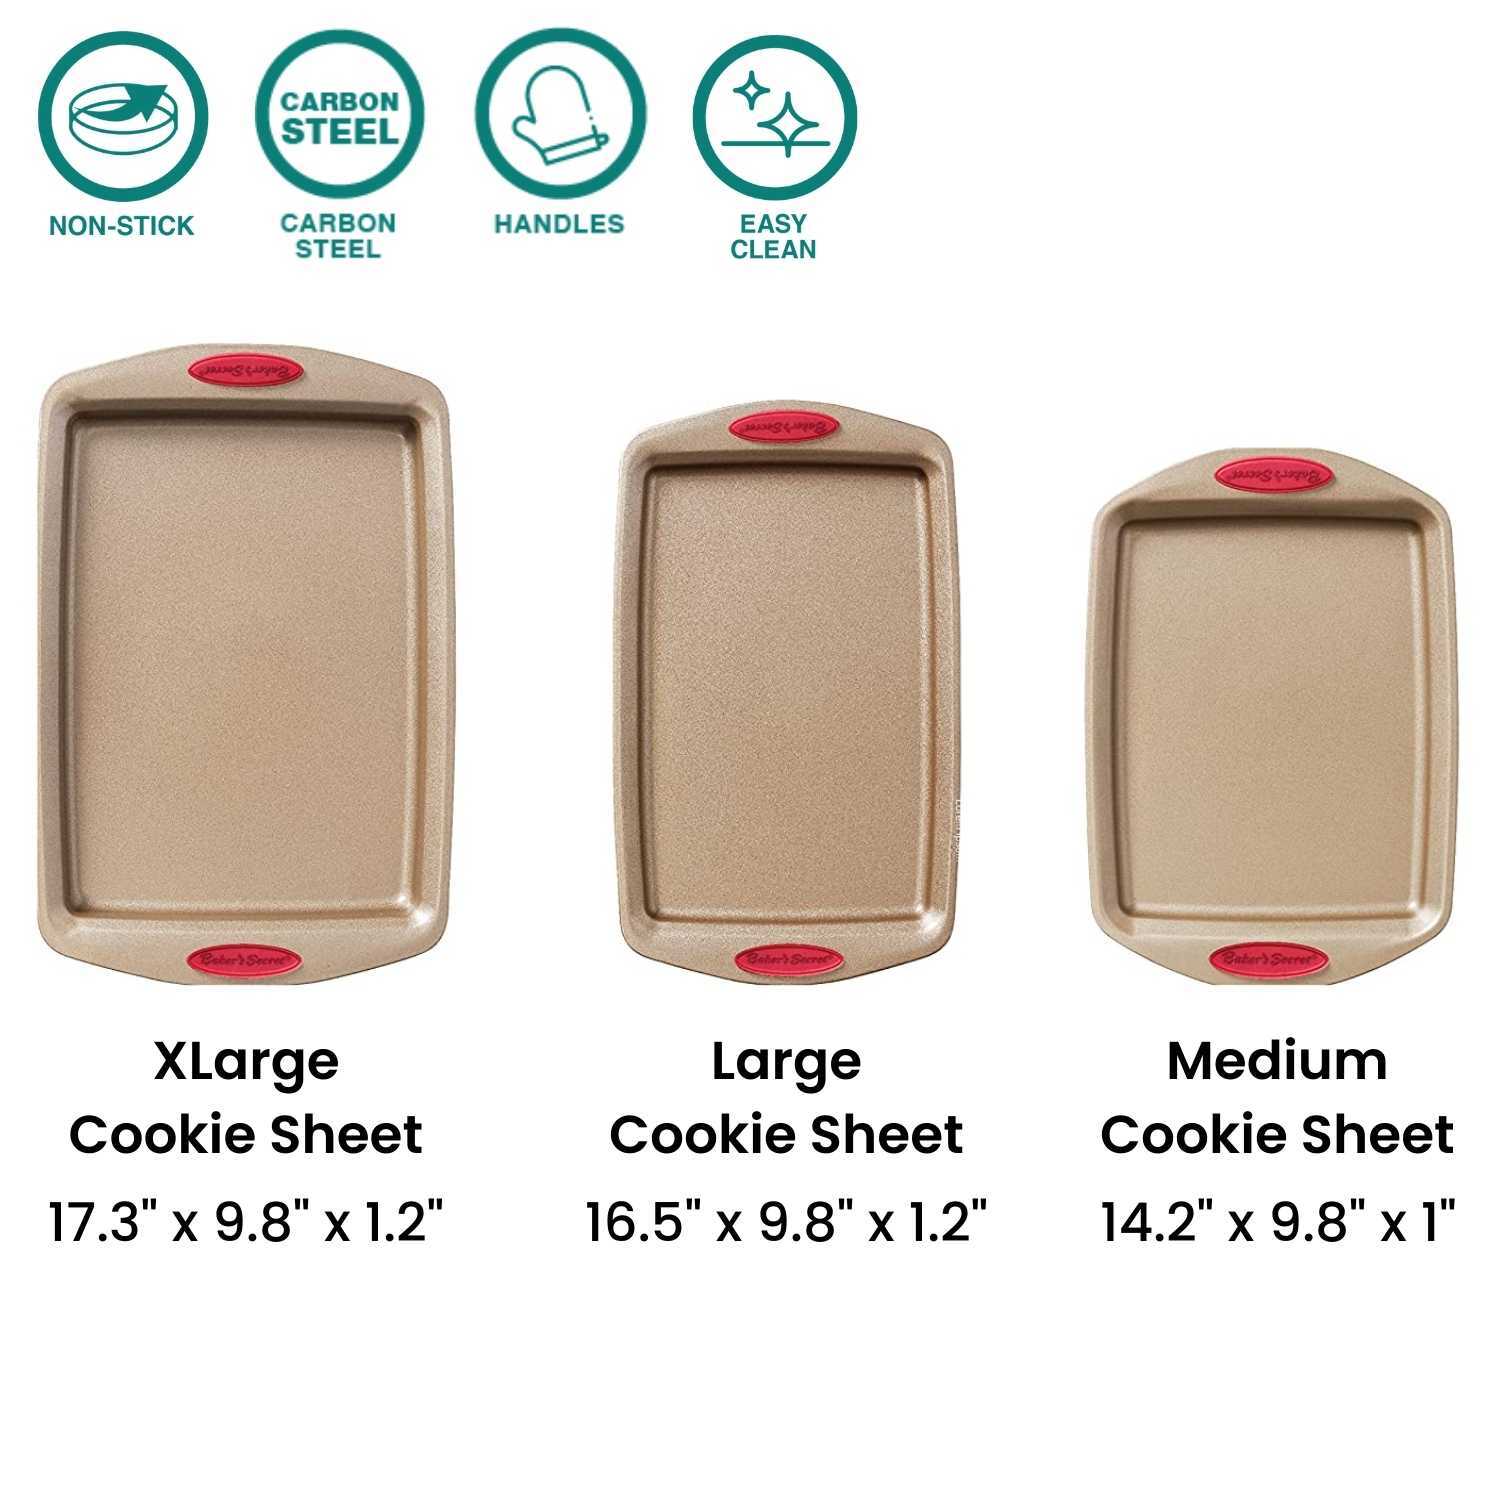 Baker's Secret - Baking Sheets For Oven, Set Of 3 Cookie Sheets